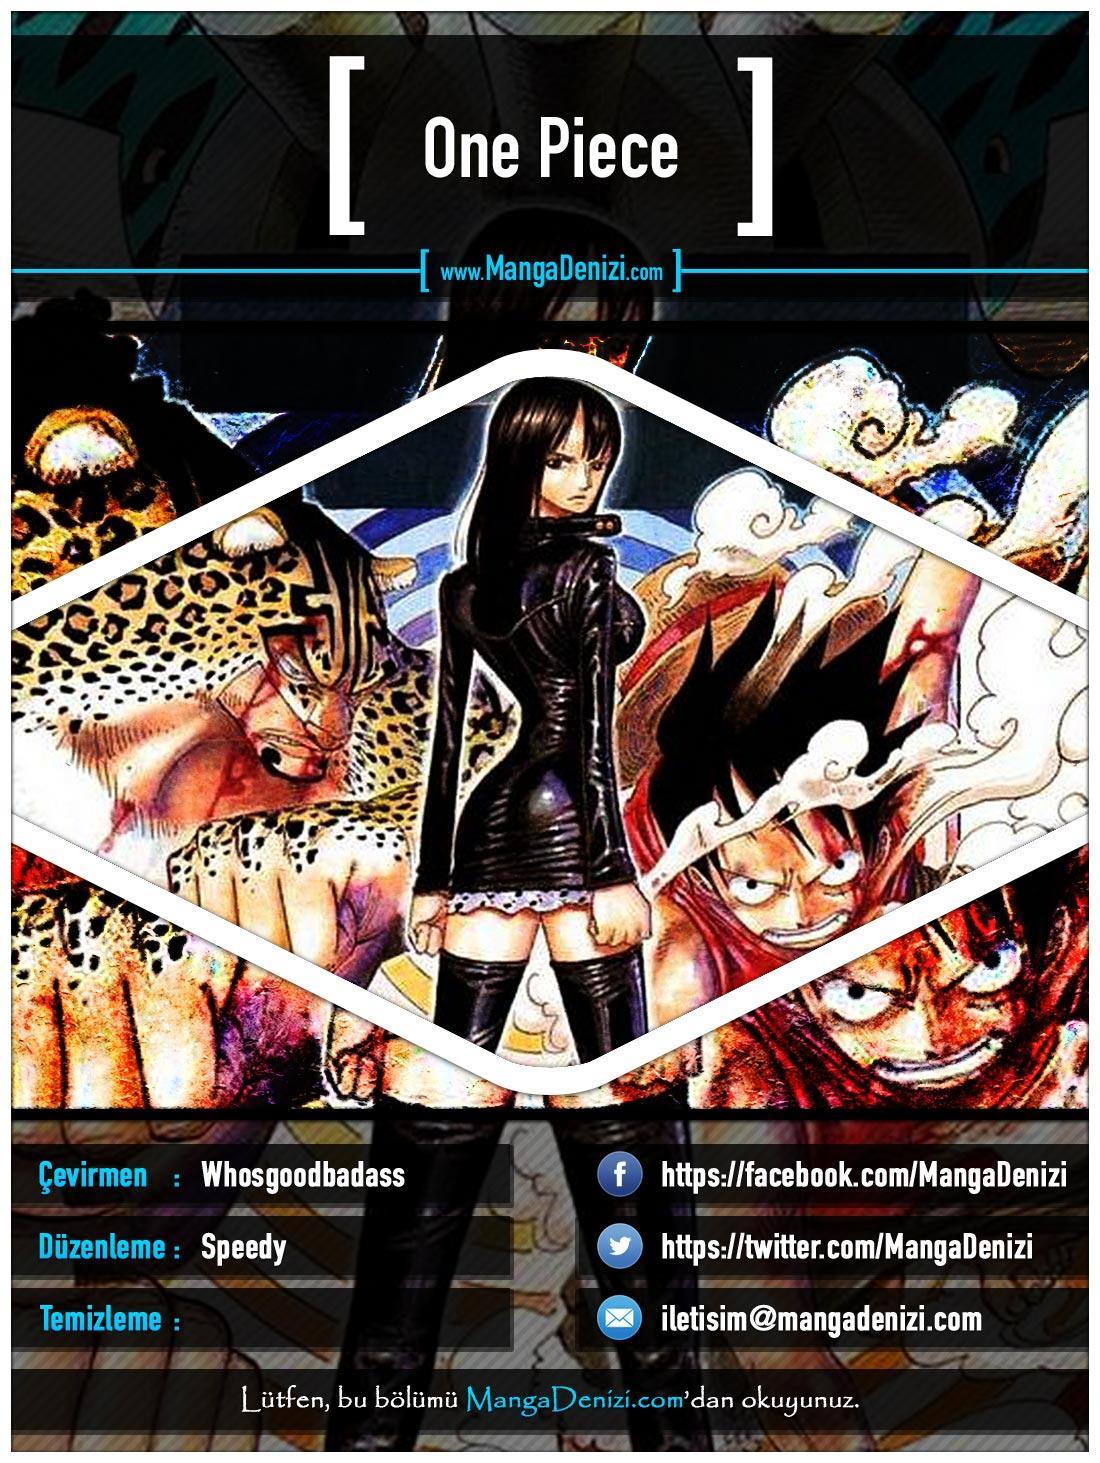 One Piece [Renkli] mangasının 0432 bölümünün 1. sayfasını okuyorsunuz.